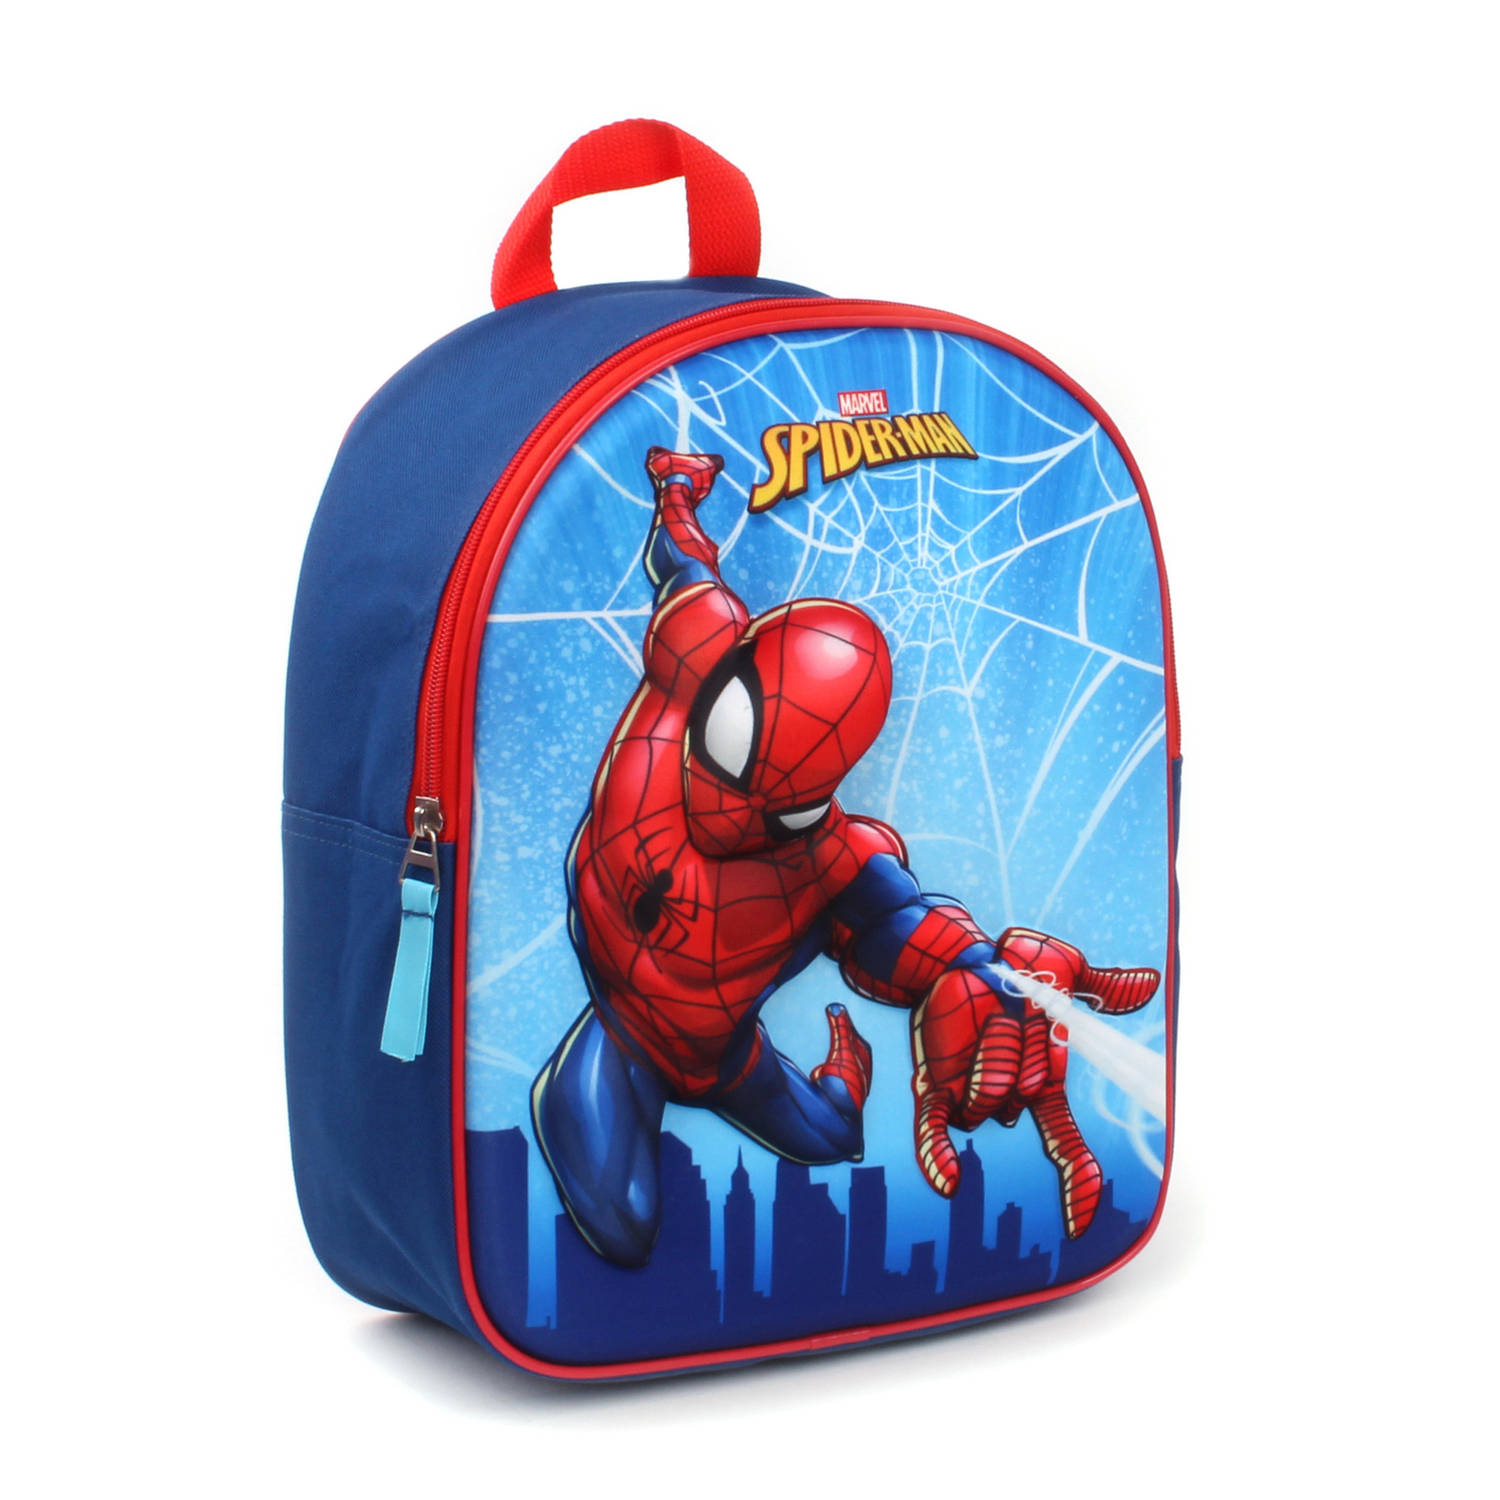 Marvel rugzak Spider Man 3D 9 liter polyester blauw-rood